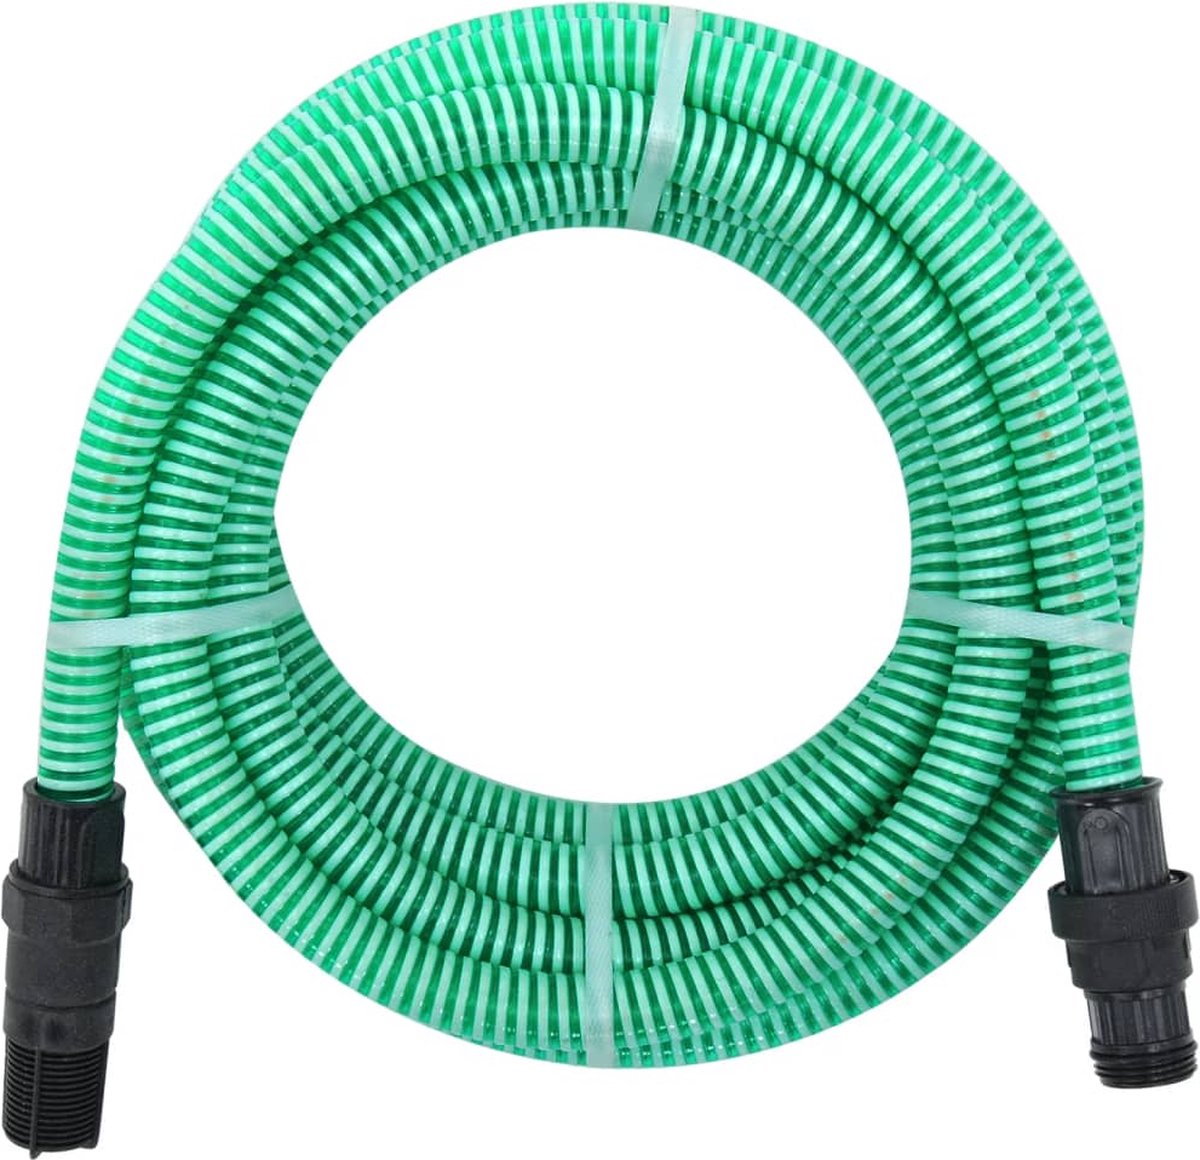 VidaLife Zuigslang met PVC koppelingen 4 m 22 mm groen